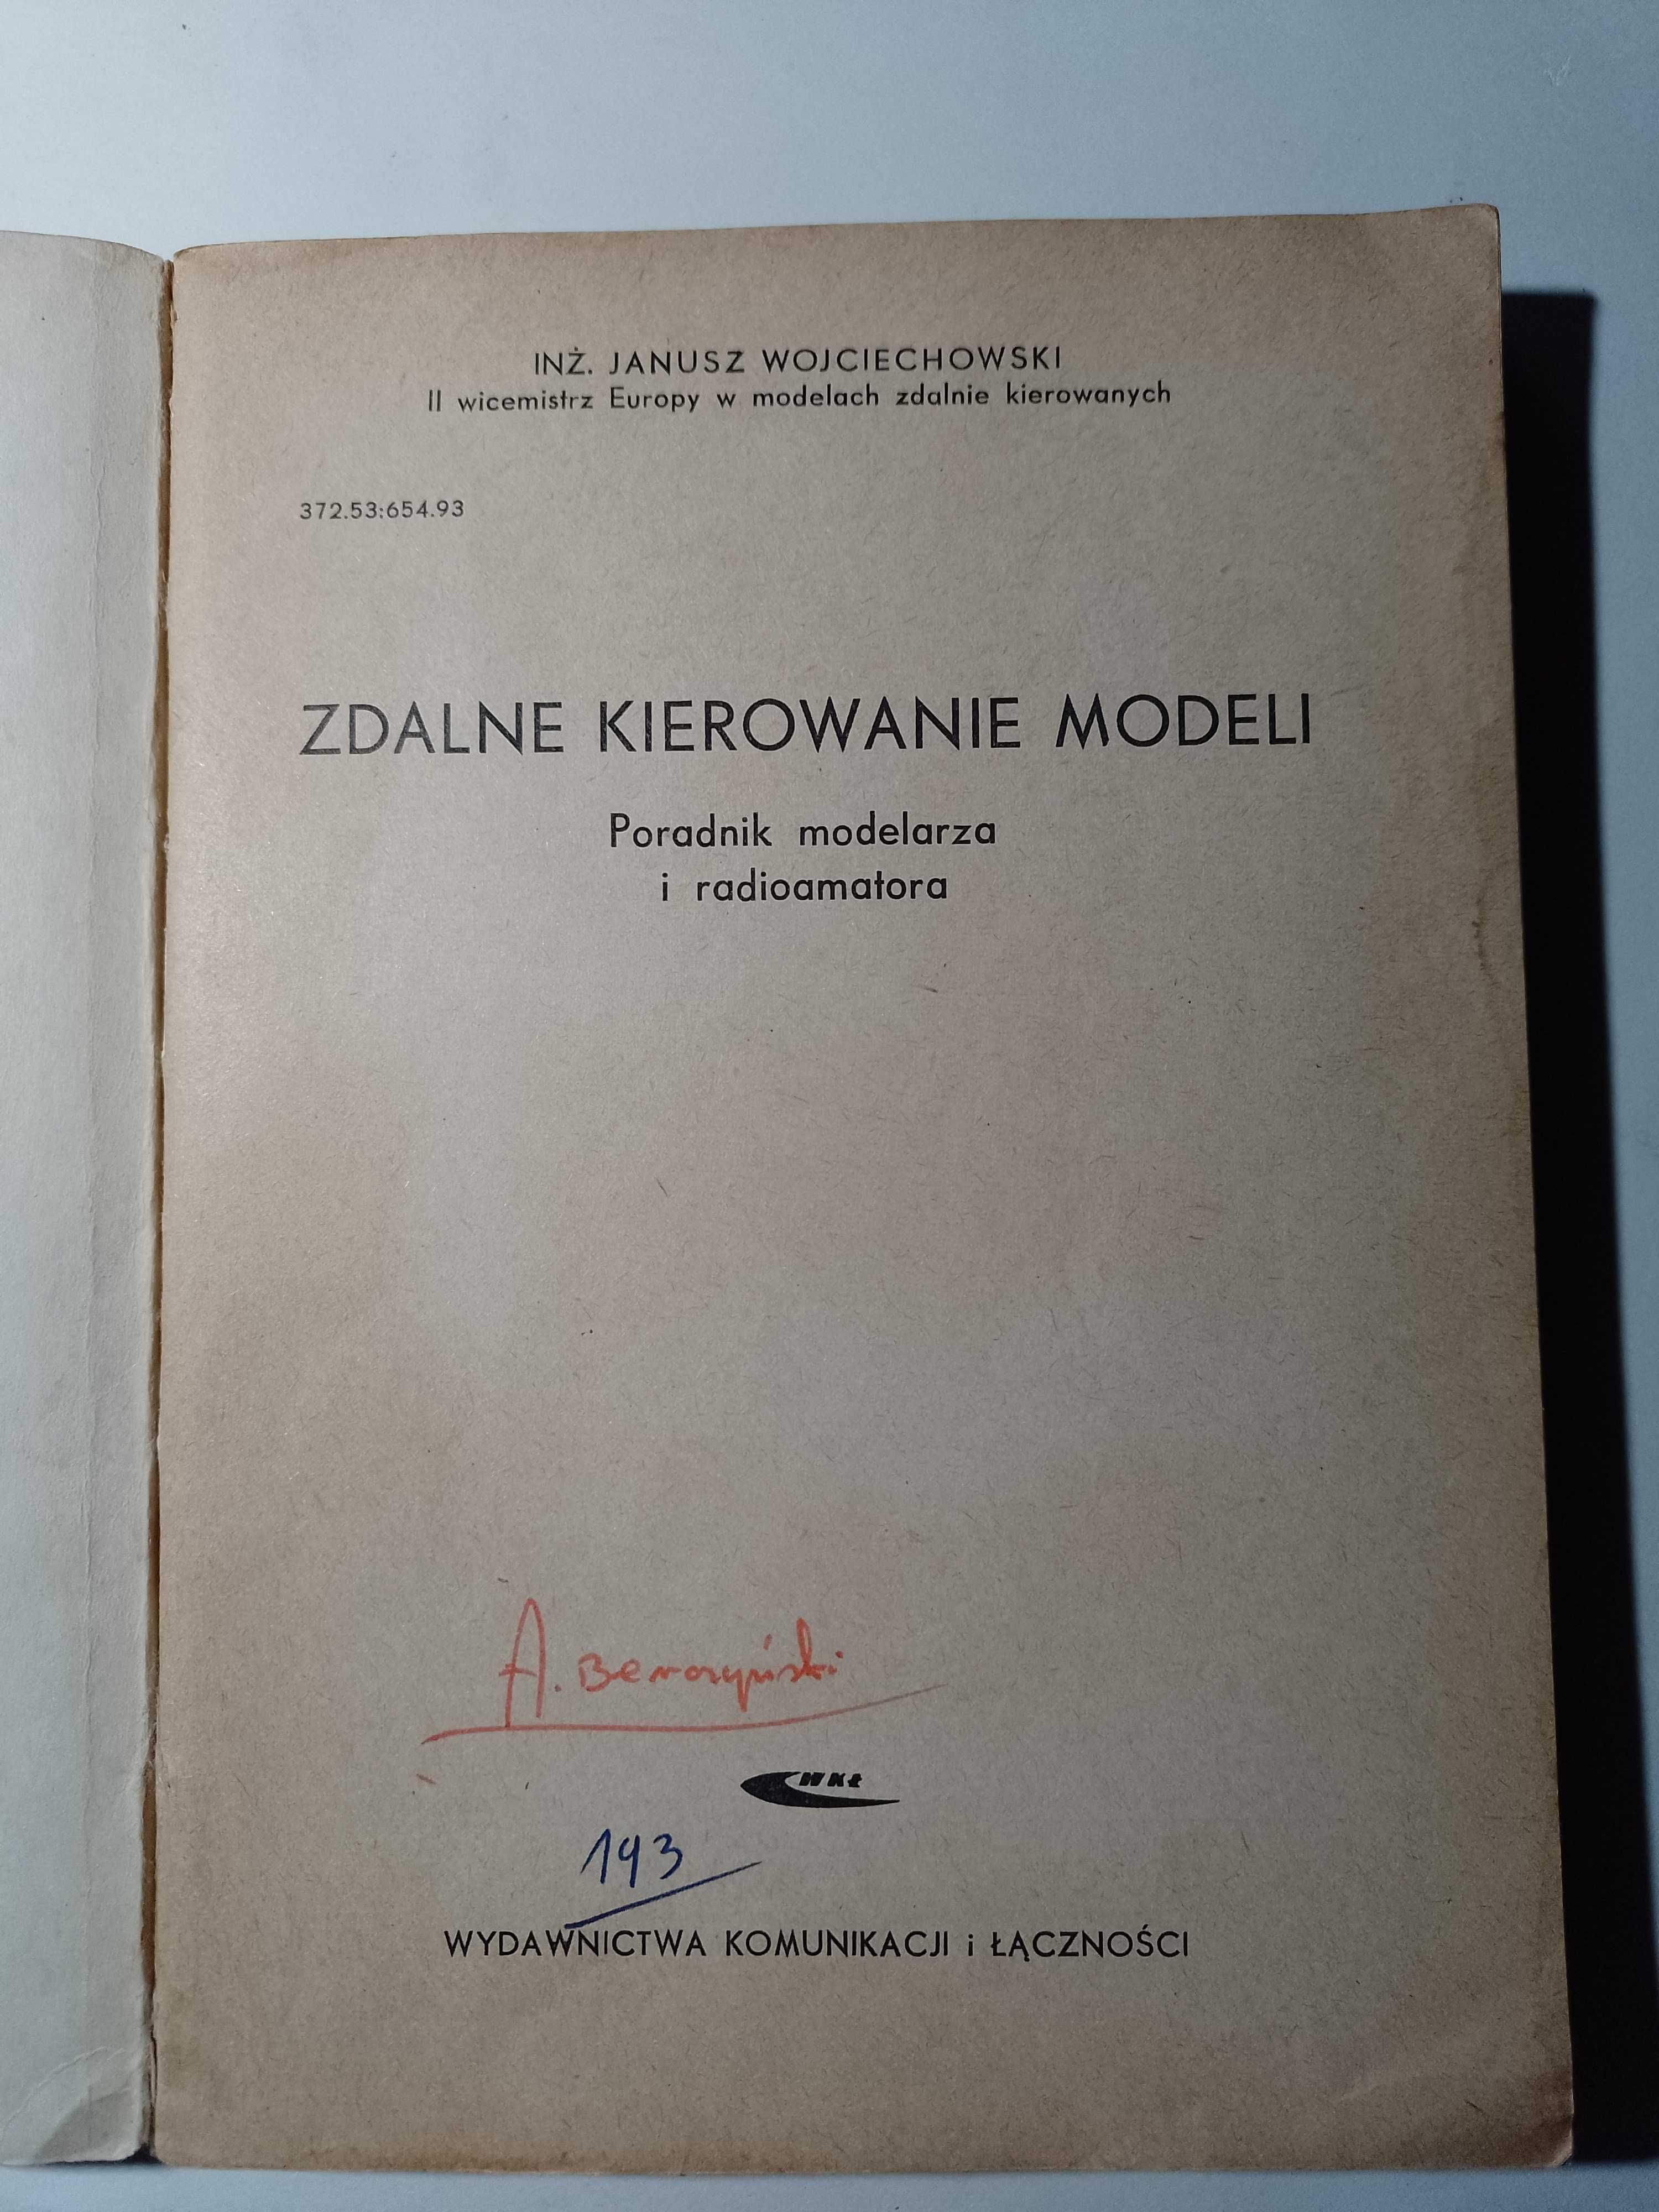 "Zdalne kierowanie modeli" Janusz Wojciechowski, retro, poradnik